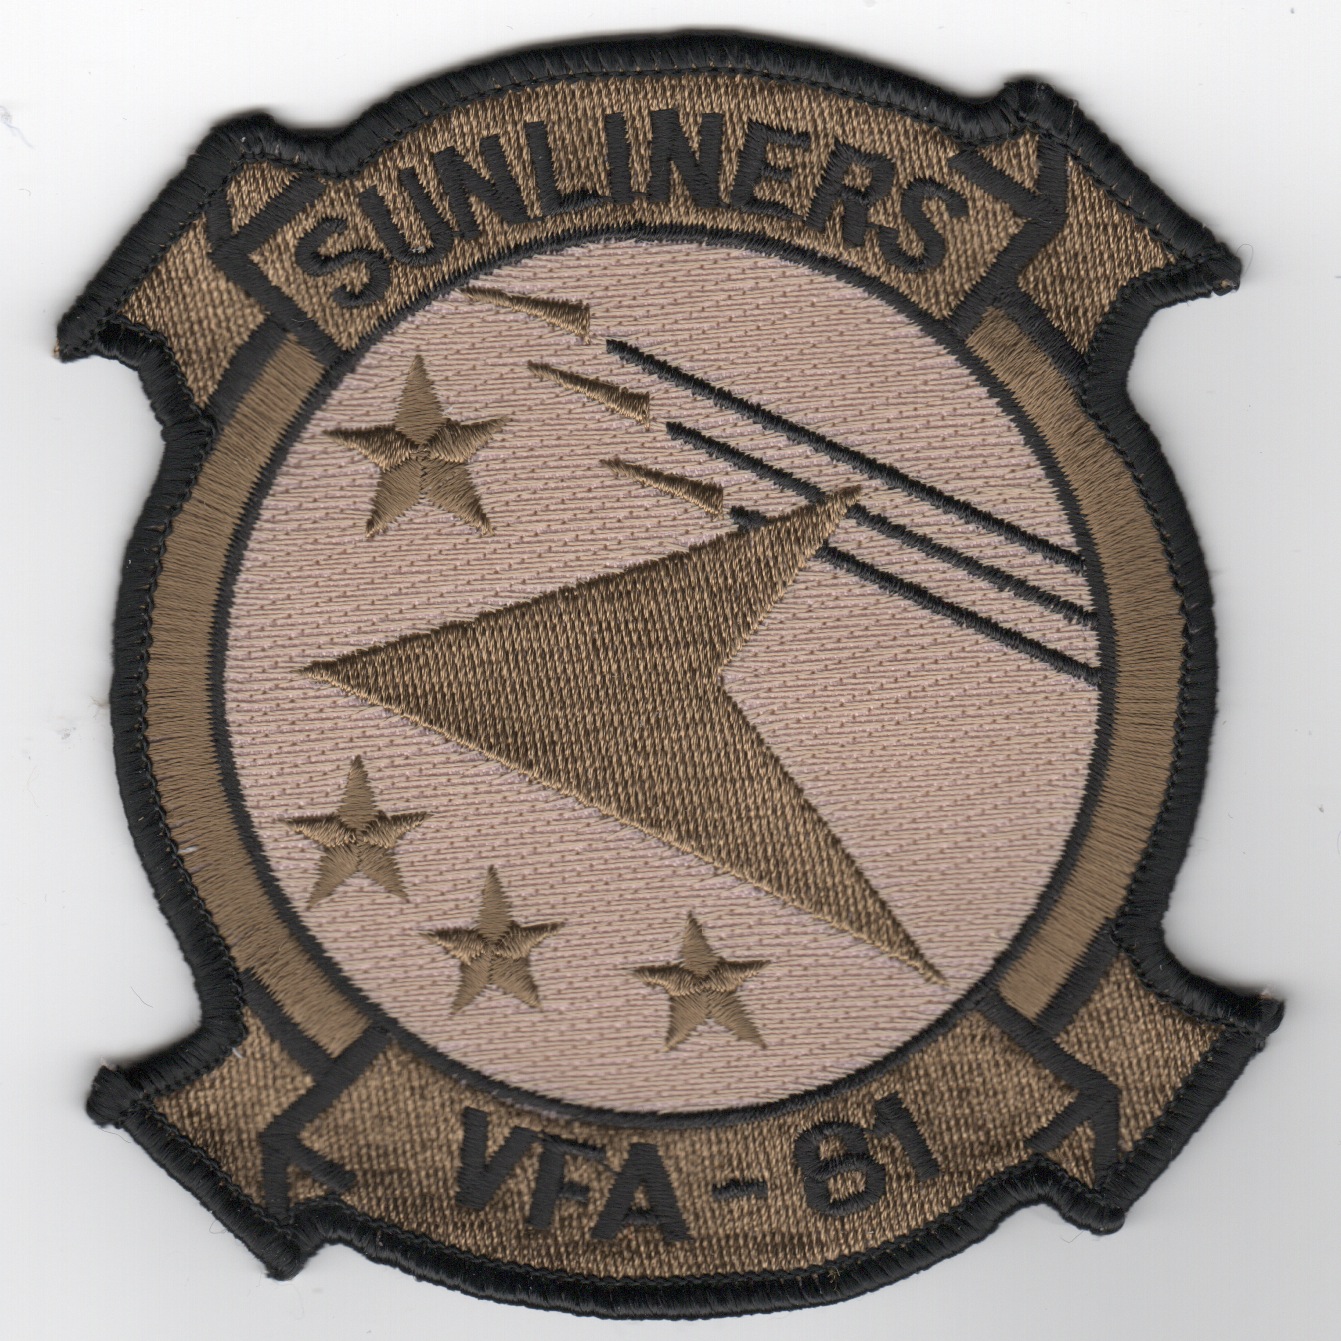 VFA-81 Squadron Patch (Des)